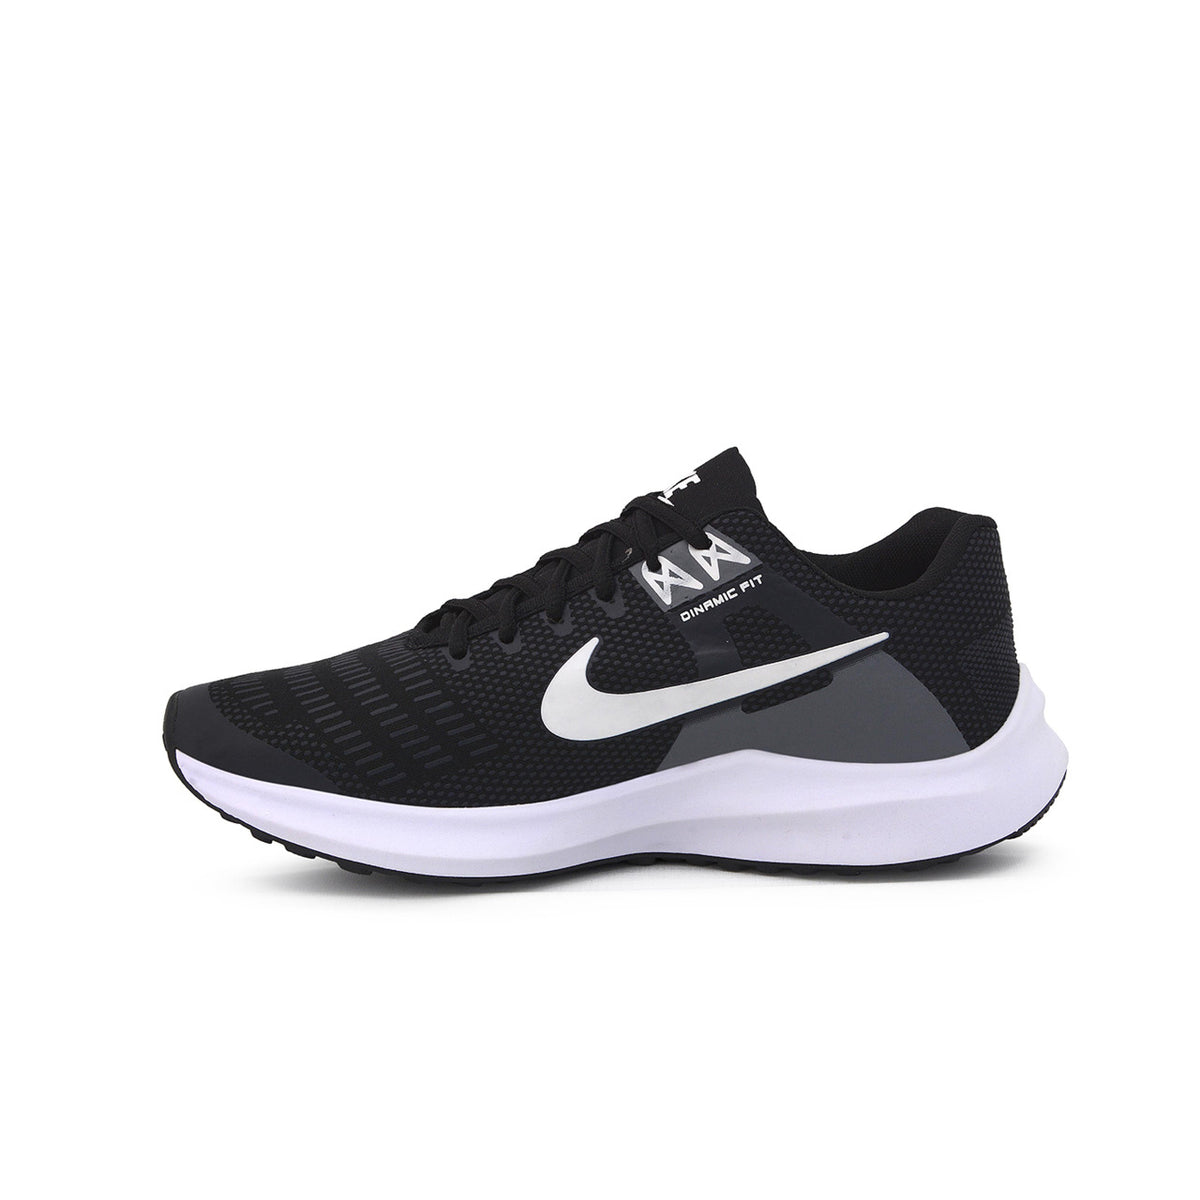 Tênis Nike Dinamic Fit - Preto/Branco